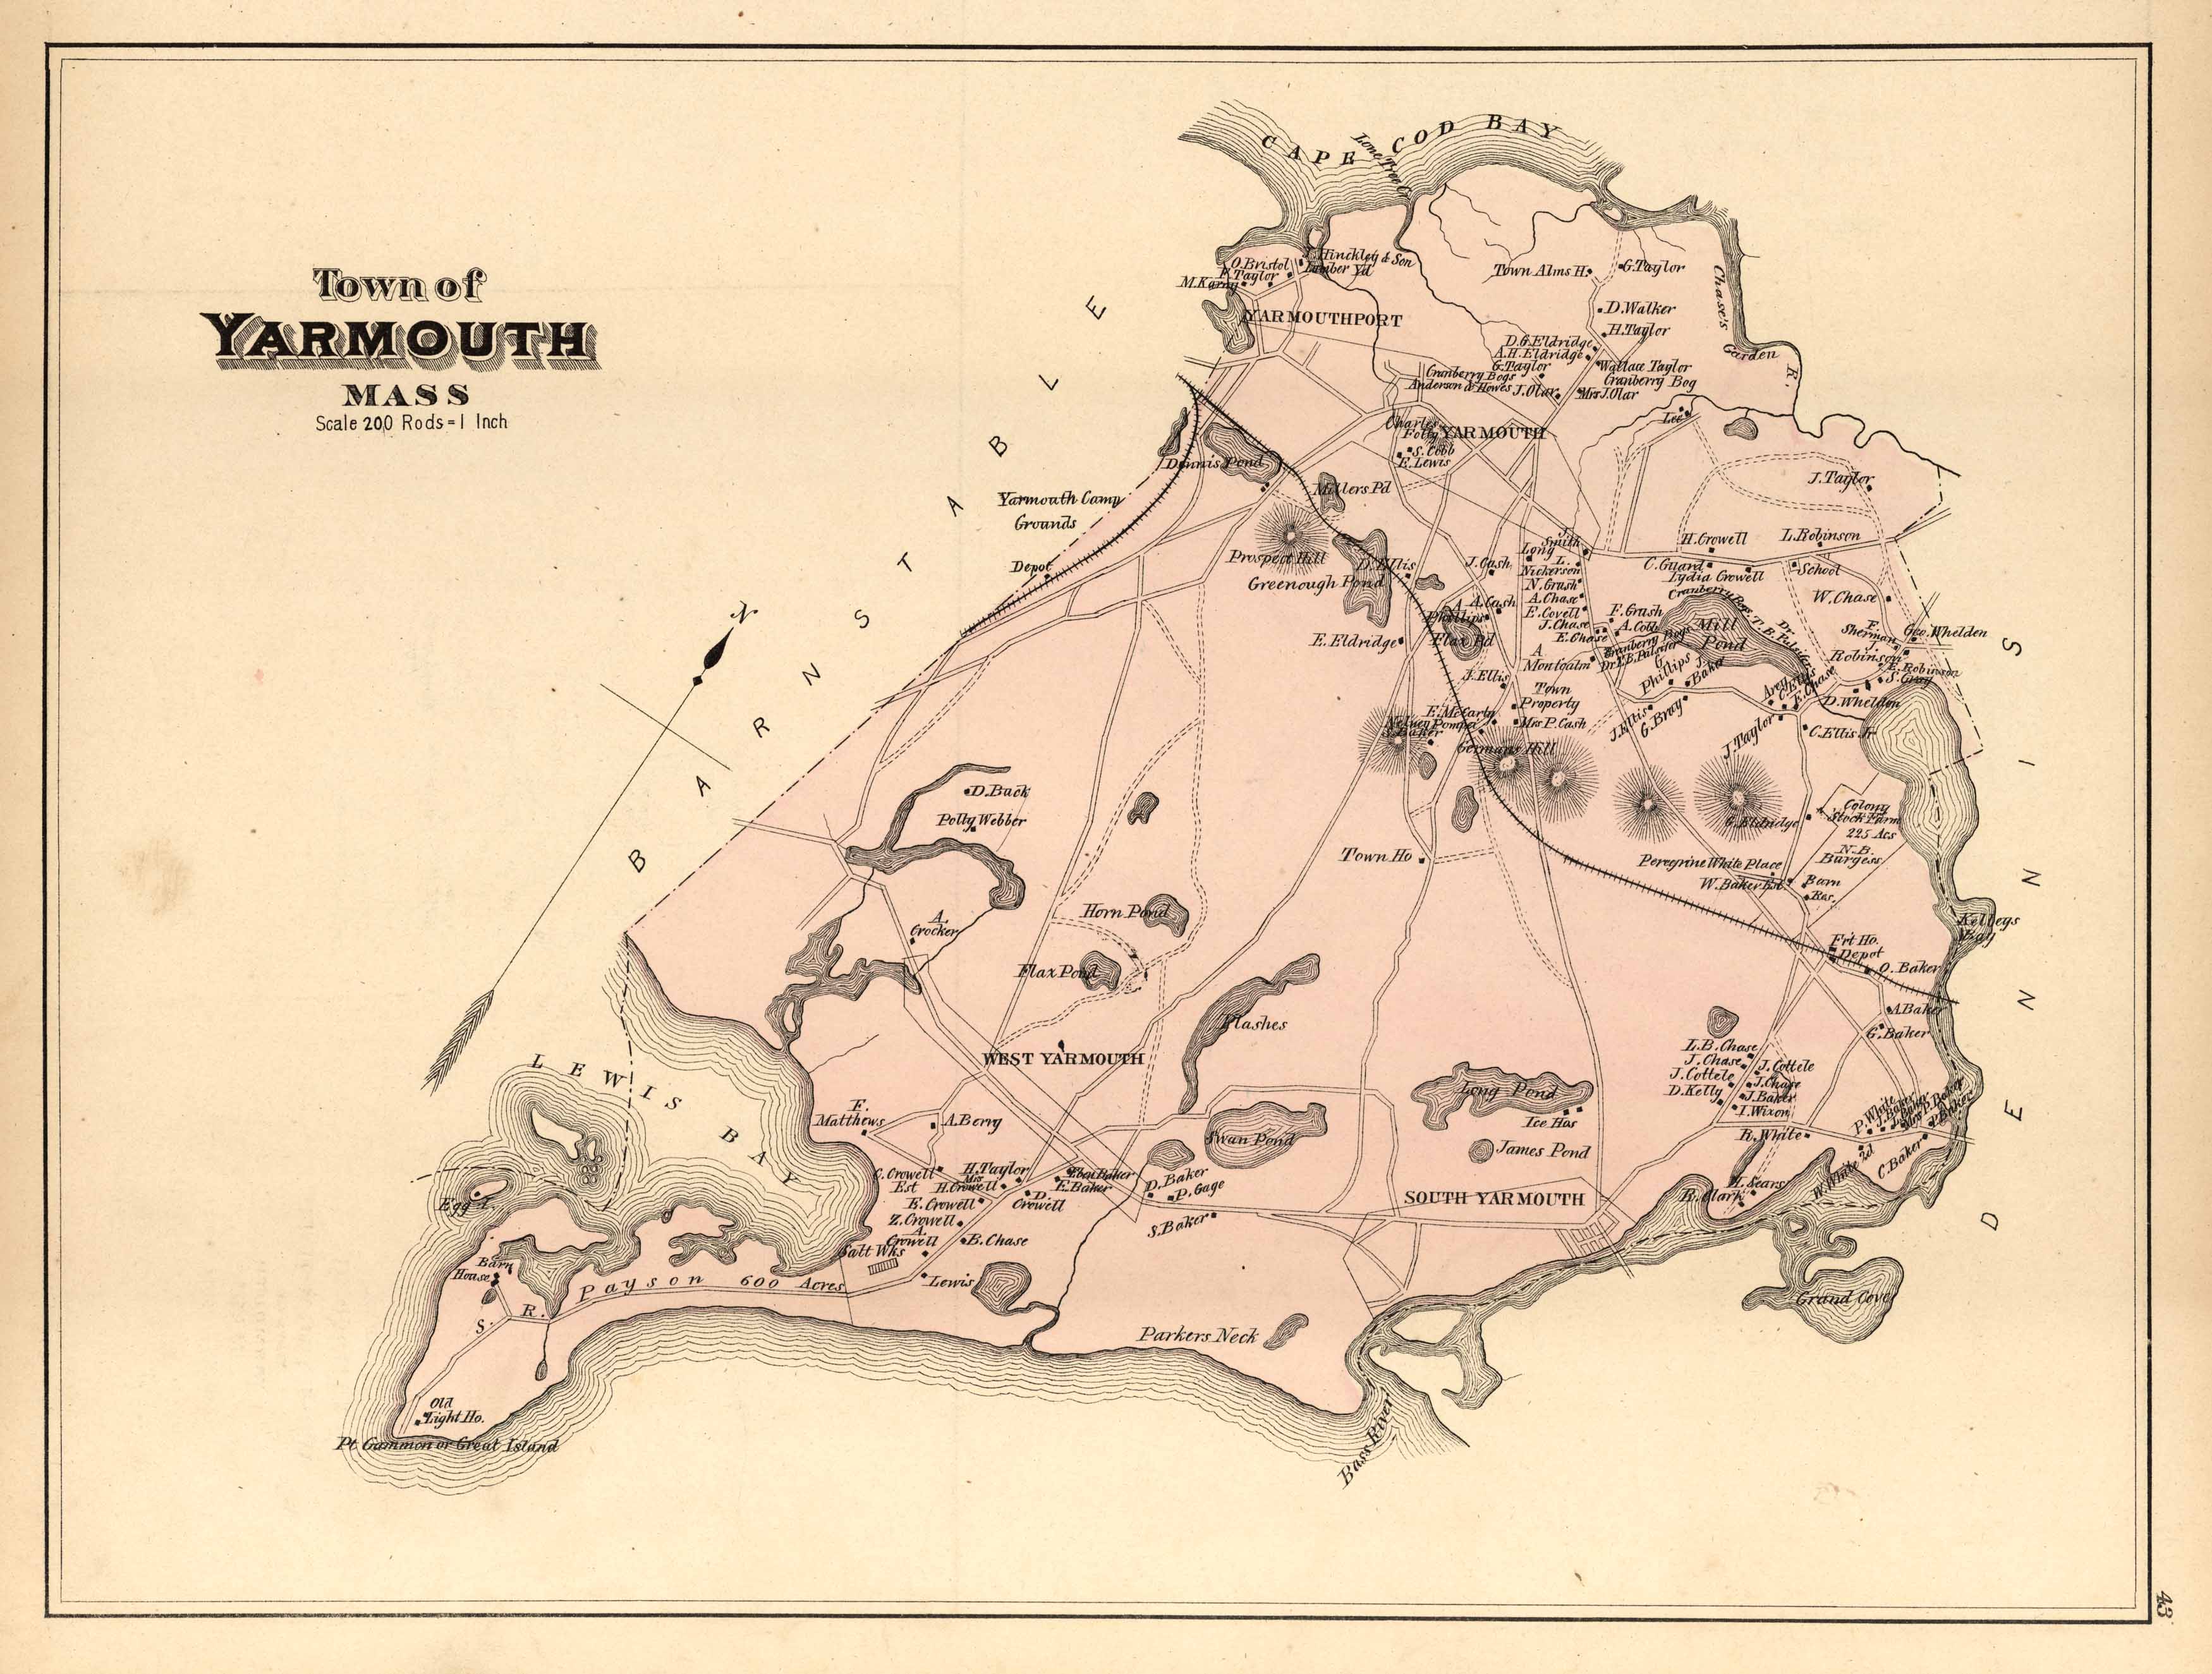 Jersey - 1880 Boston Map - UA x Louis Garneau - Urban AdvenTours